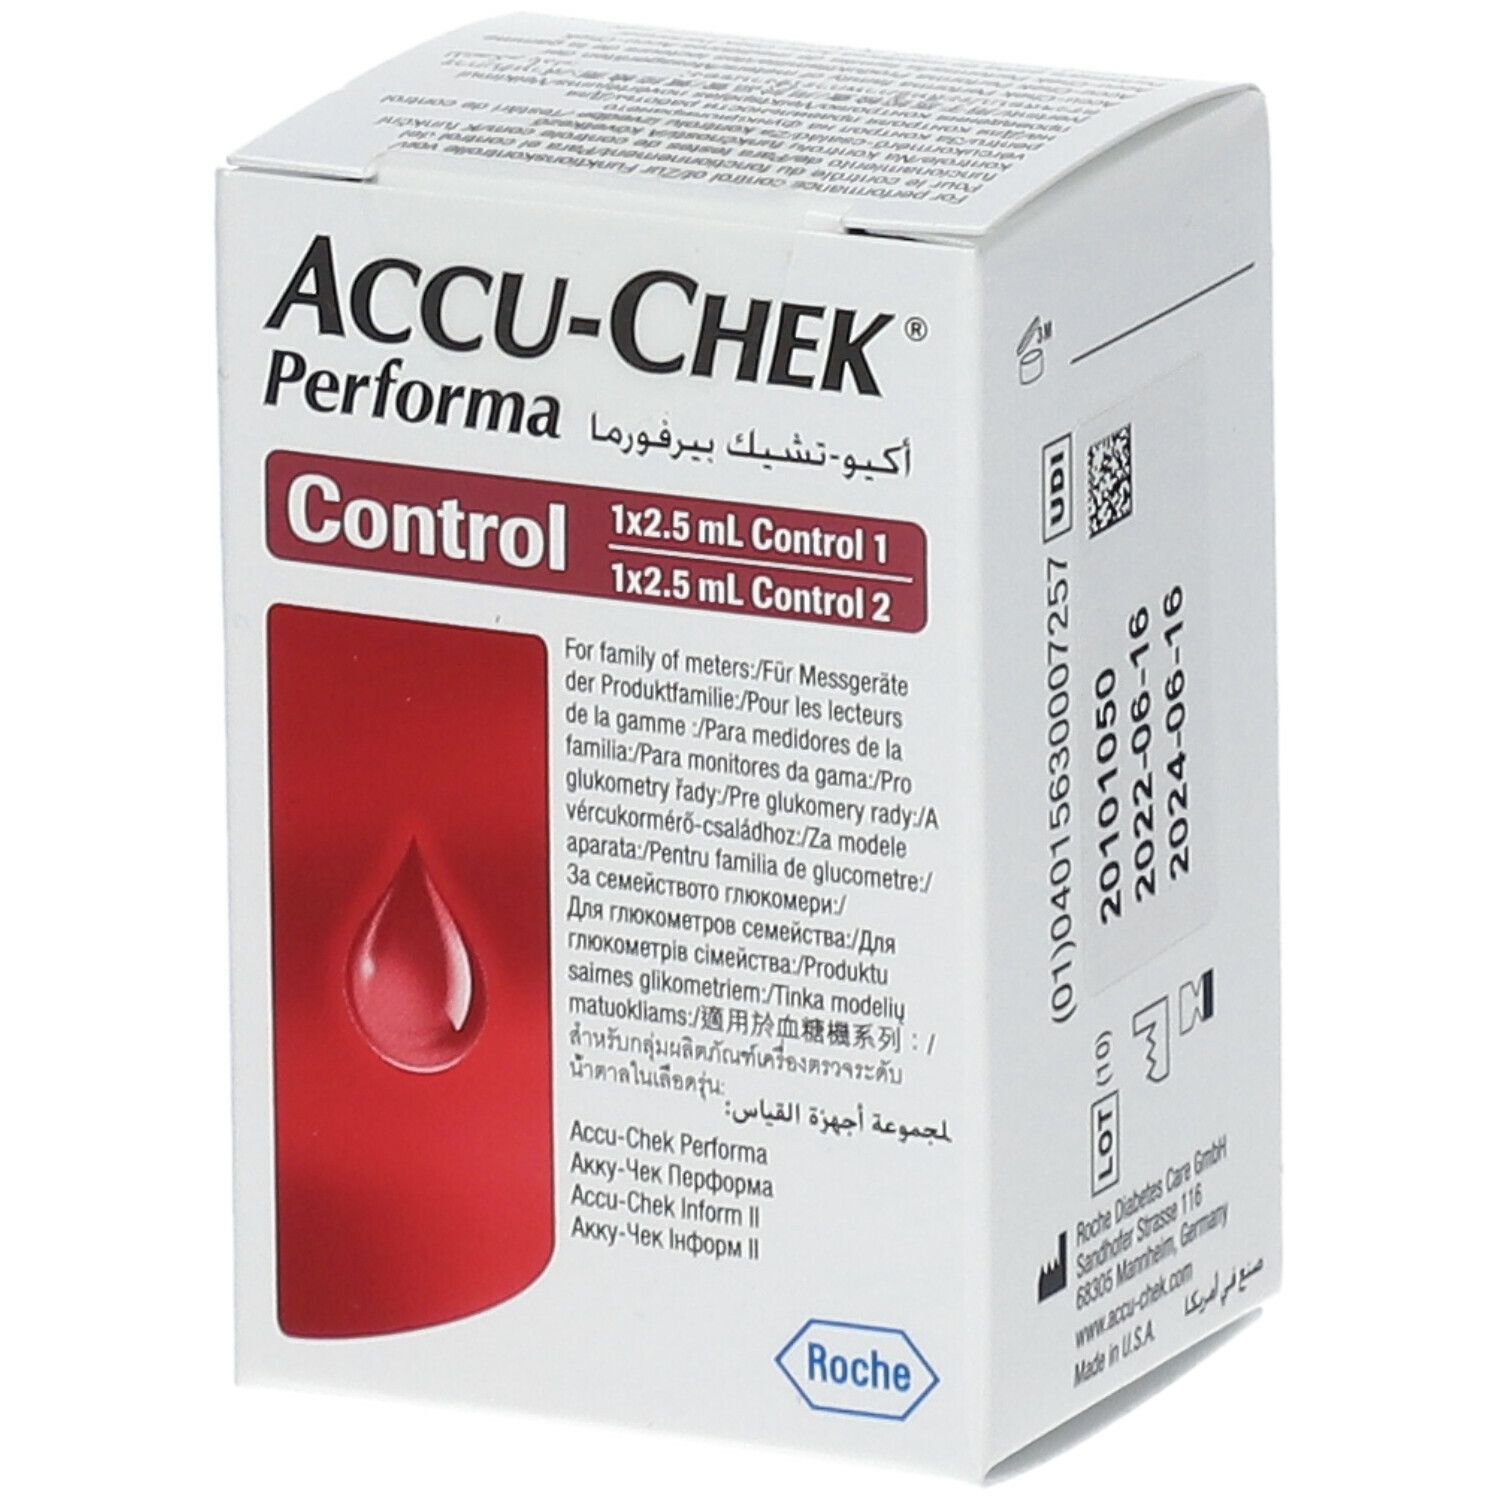 ACCU-CHEK® Performa Control